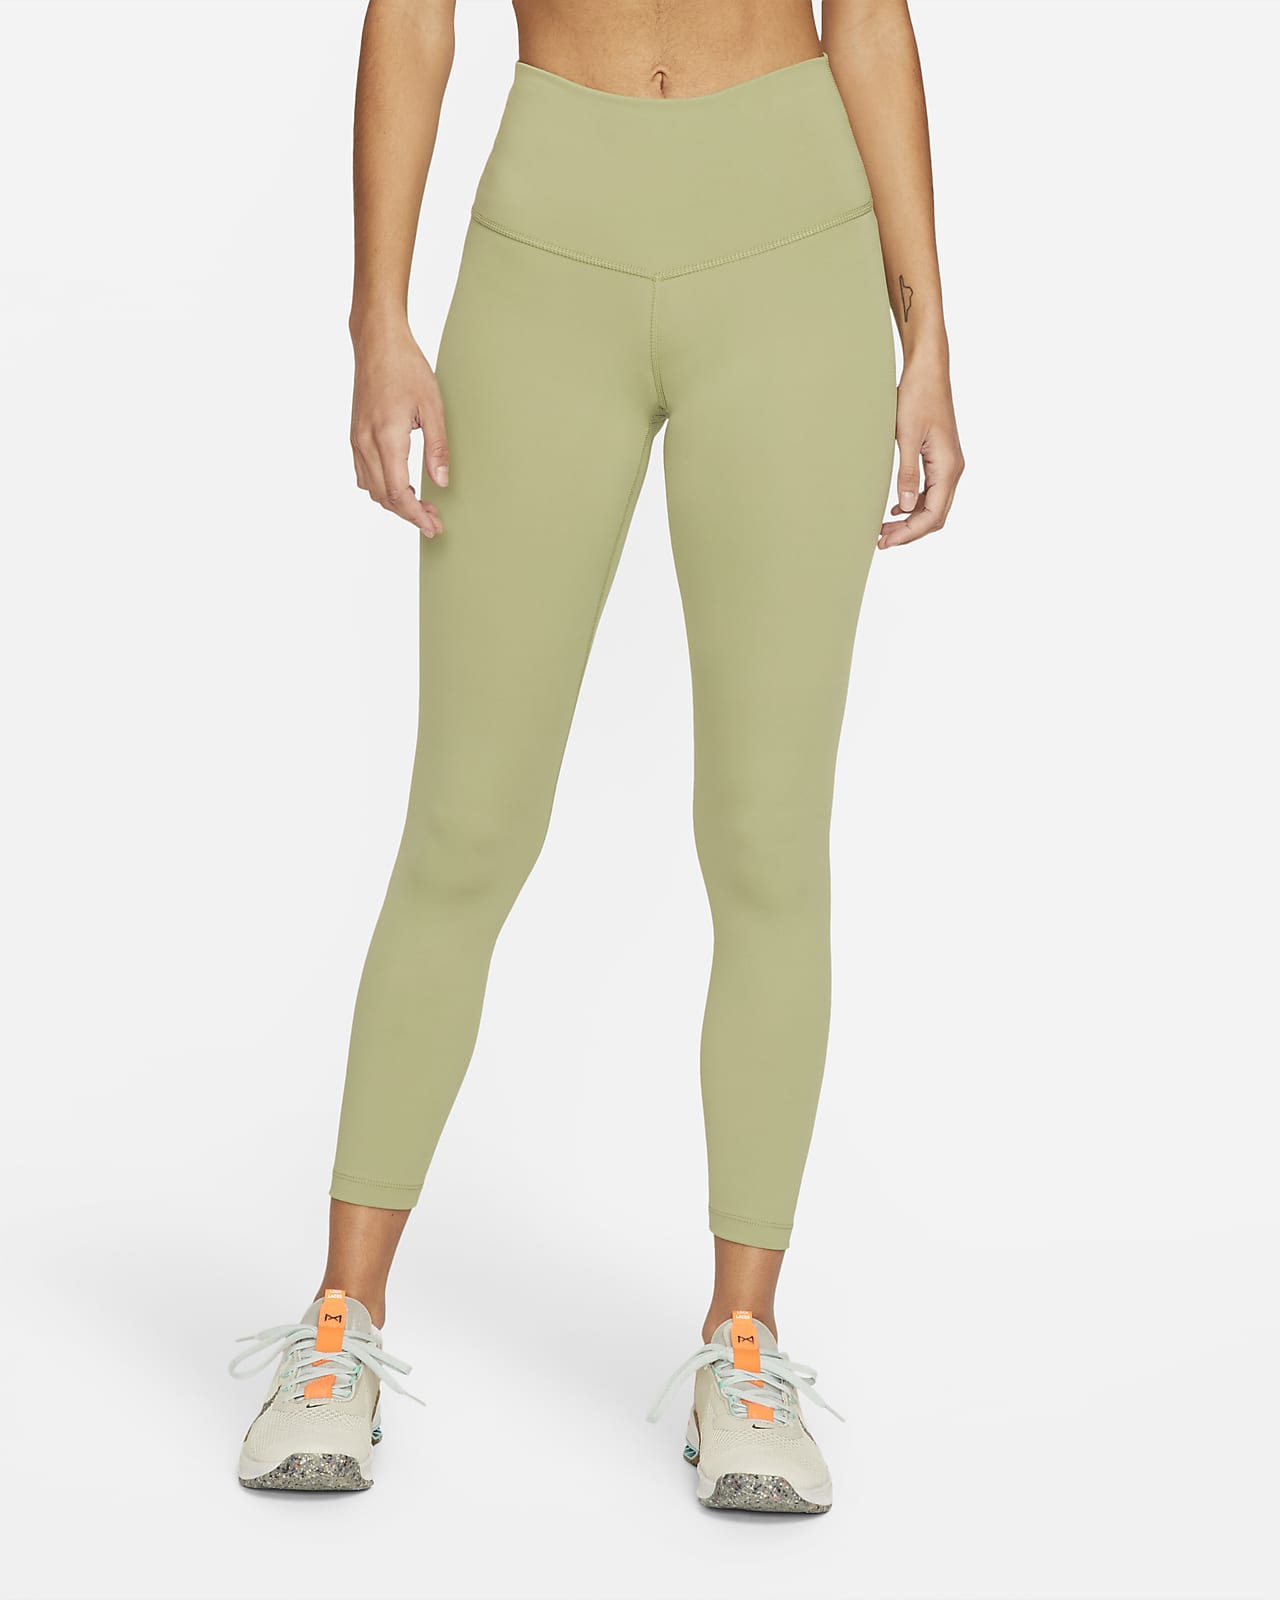 Γυναικείο ψηλόμεσο κολάν με 7/8 Nike Yoga